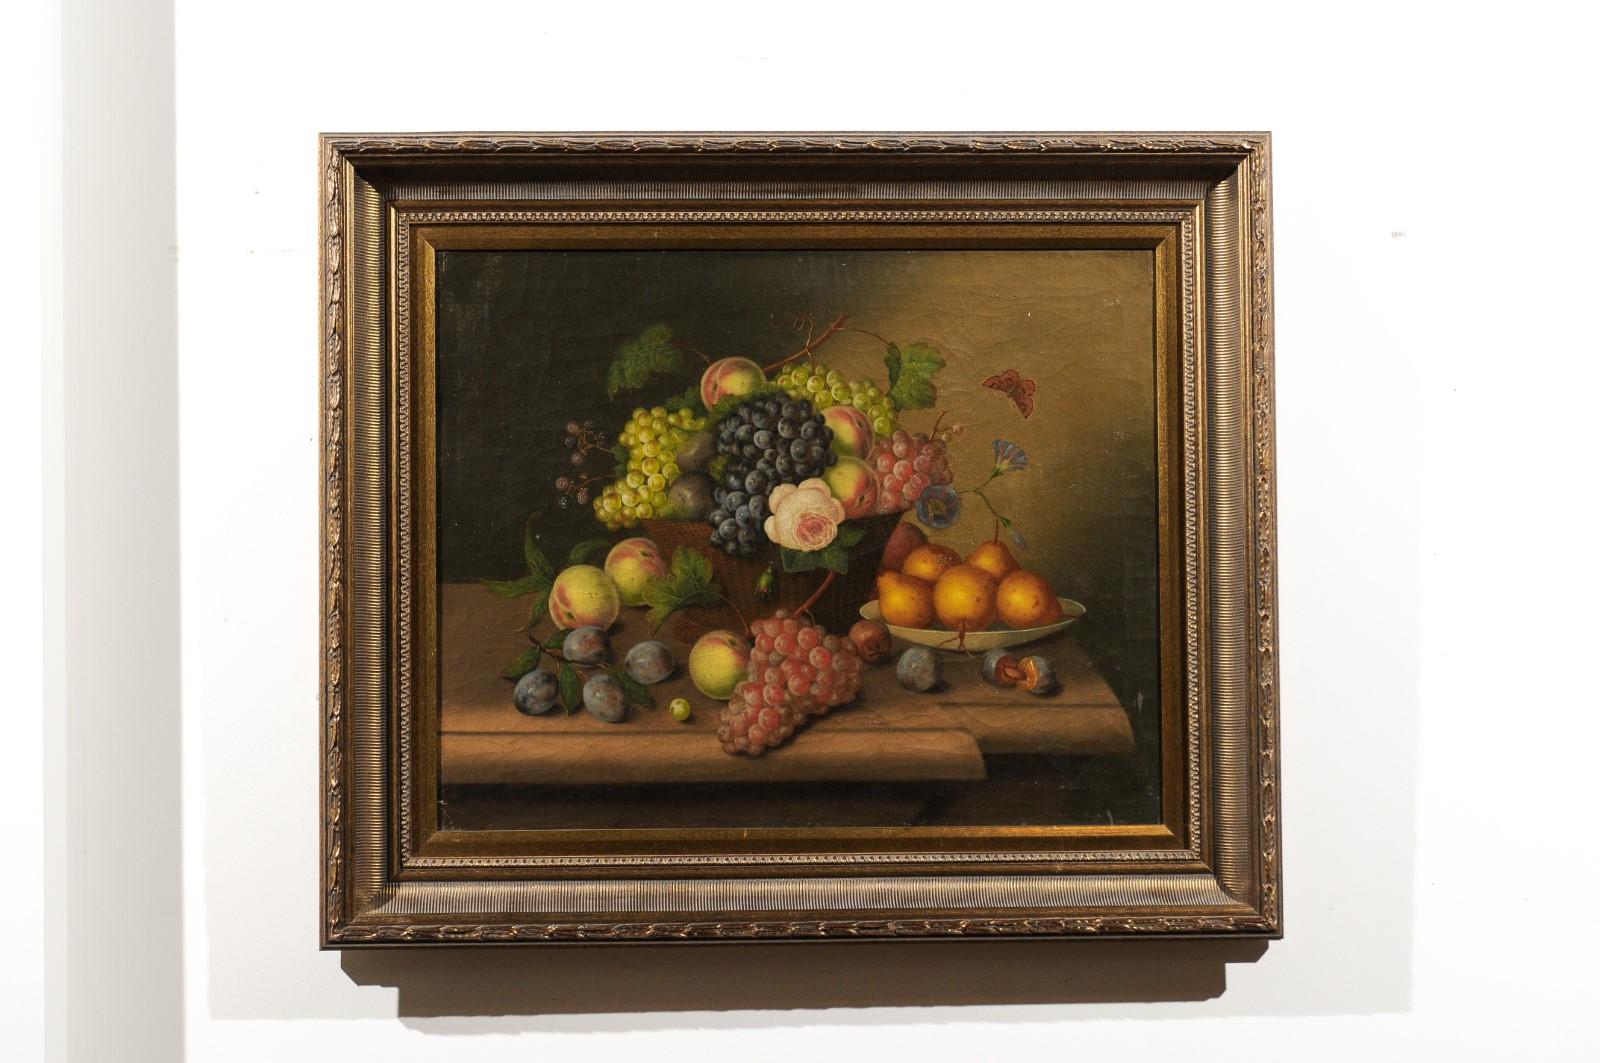 Une peinture française encadrée, à l'huile sur toile, de nature morte du 19ème siècle représentant des fruits. Née en France au XIXe siècle, cette exquise nature morte représente une abondance de fruits appétissants présentés dans un panier en osier